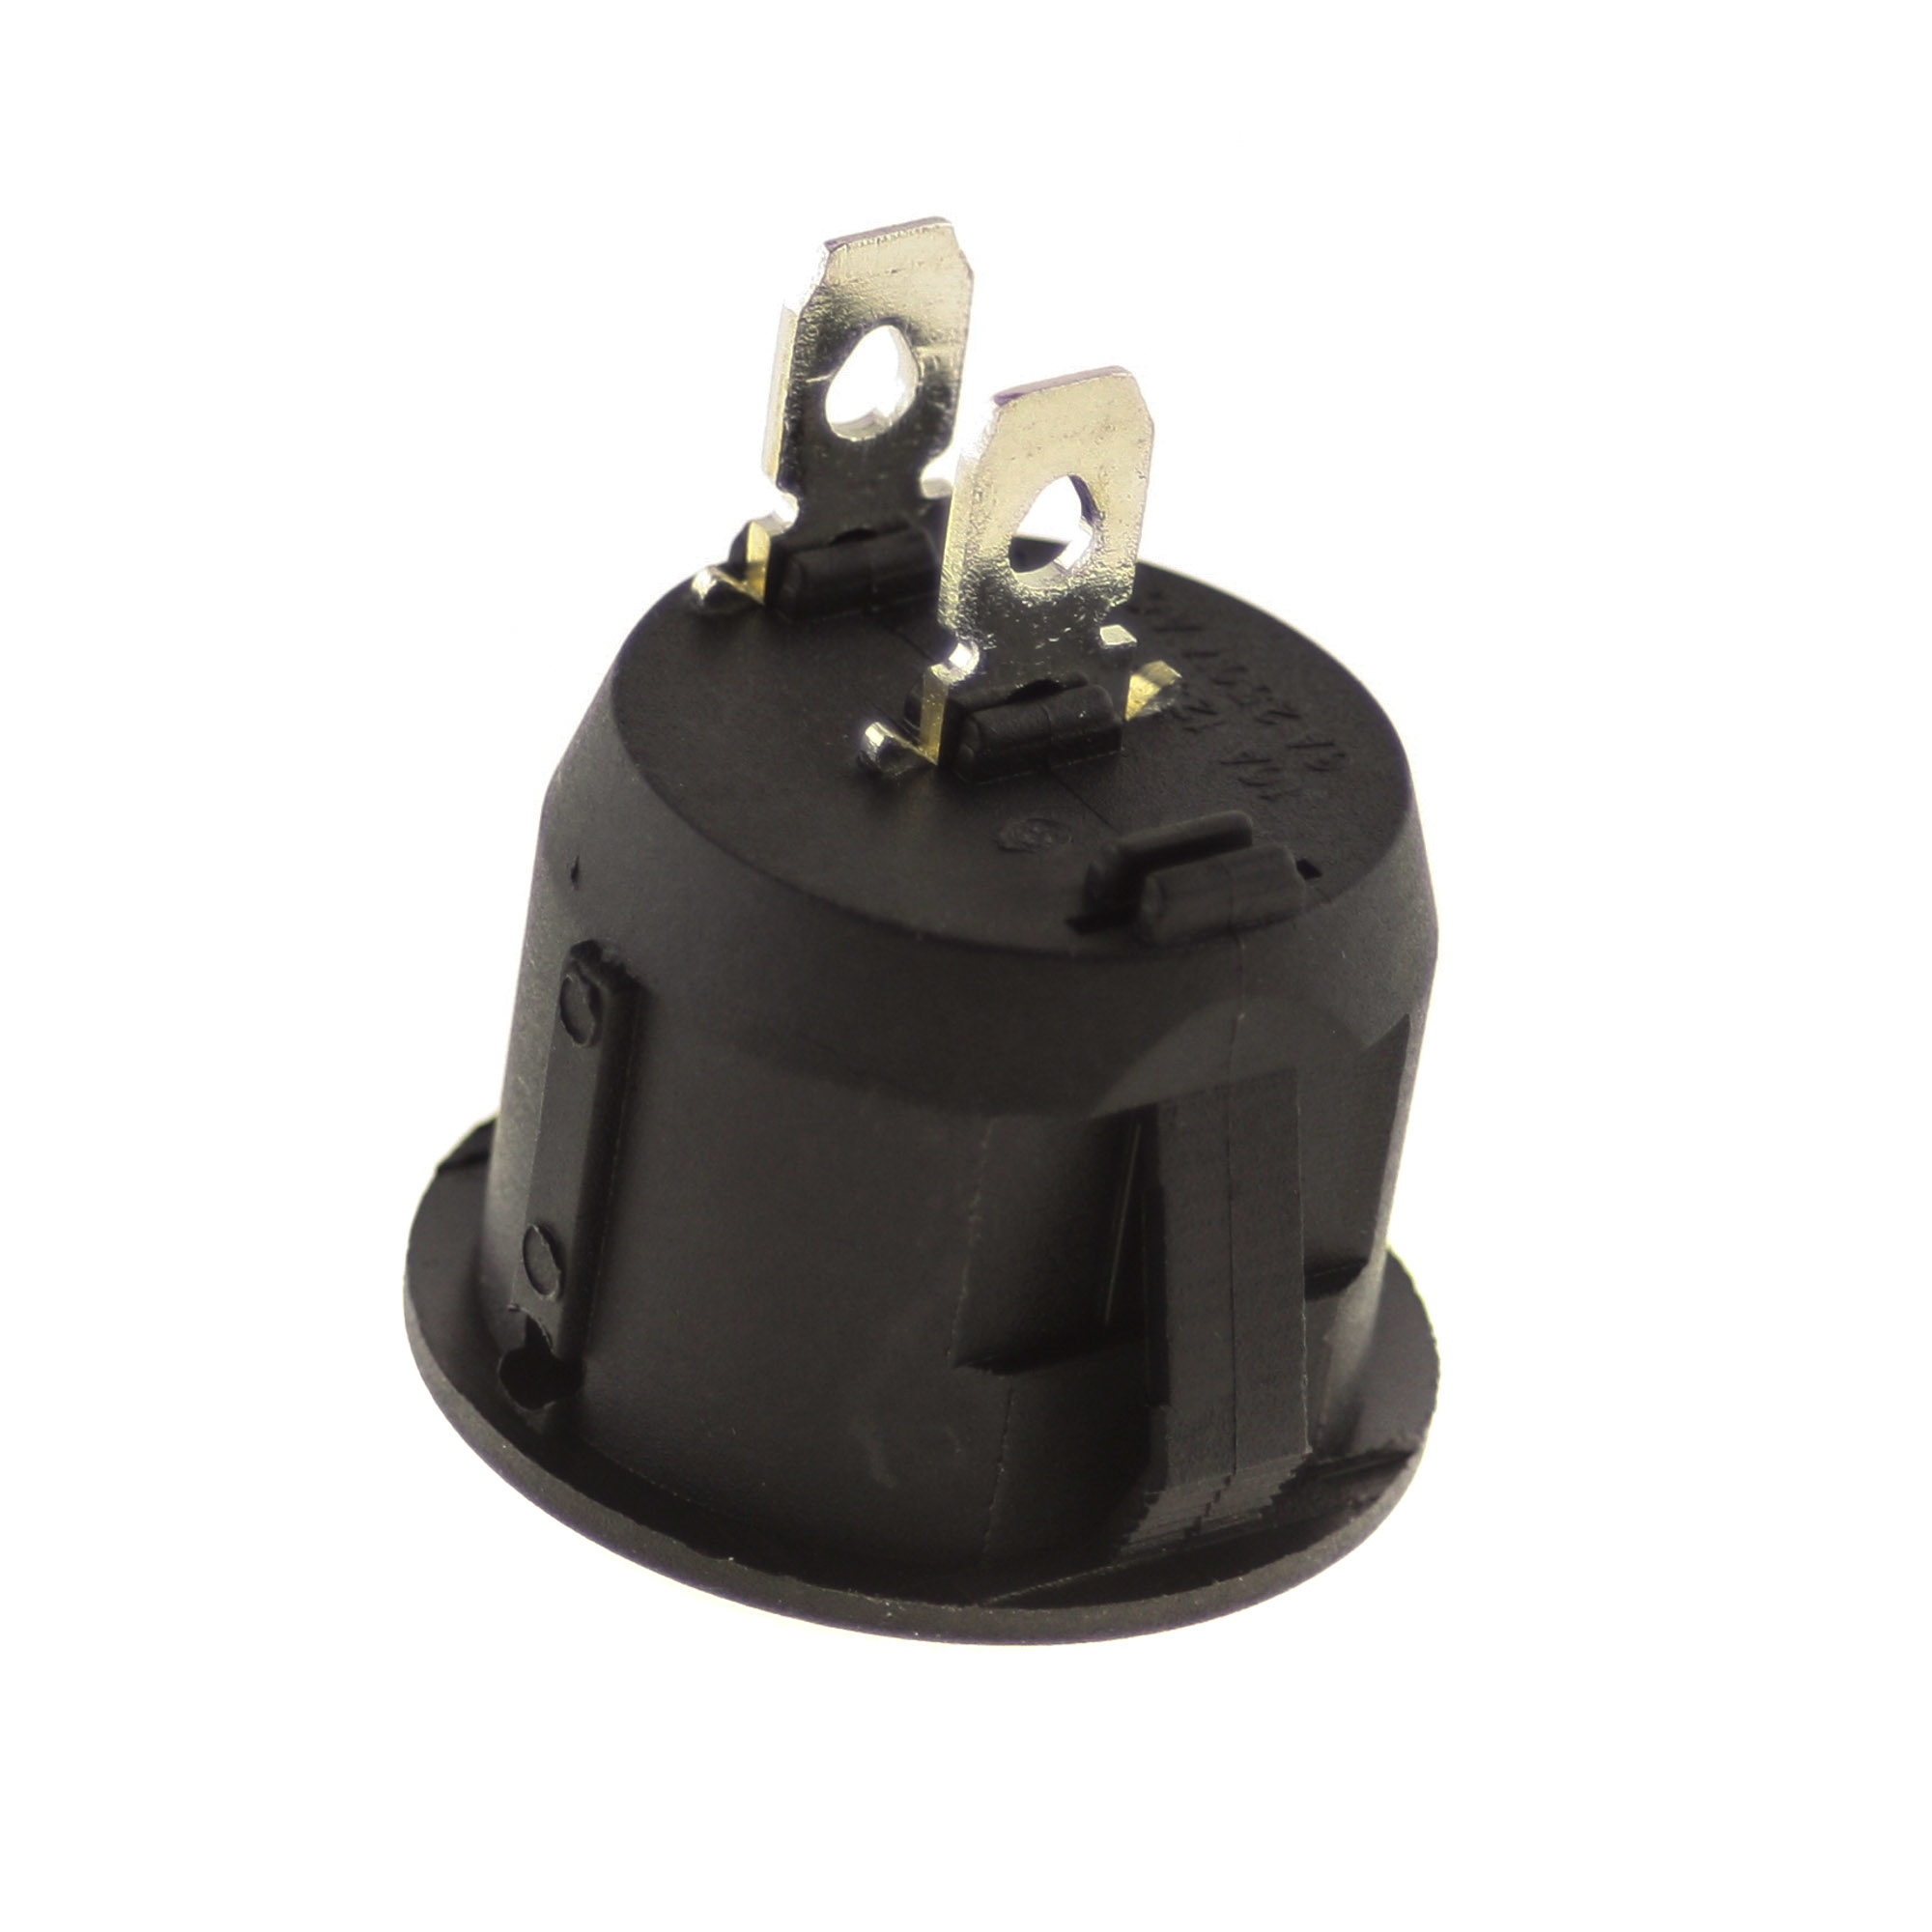 Switch I-0 250V 6A, 23mm, round, black